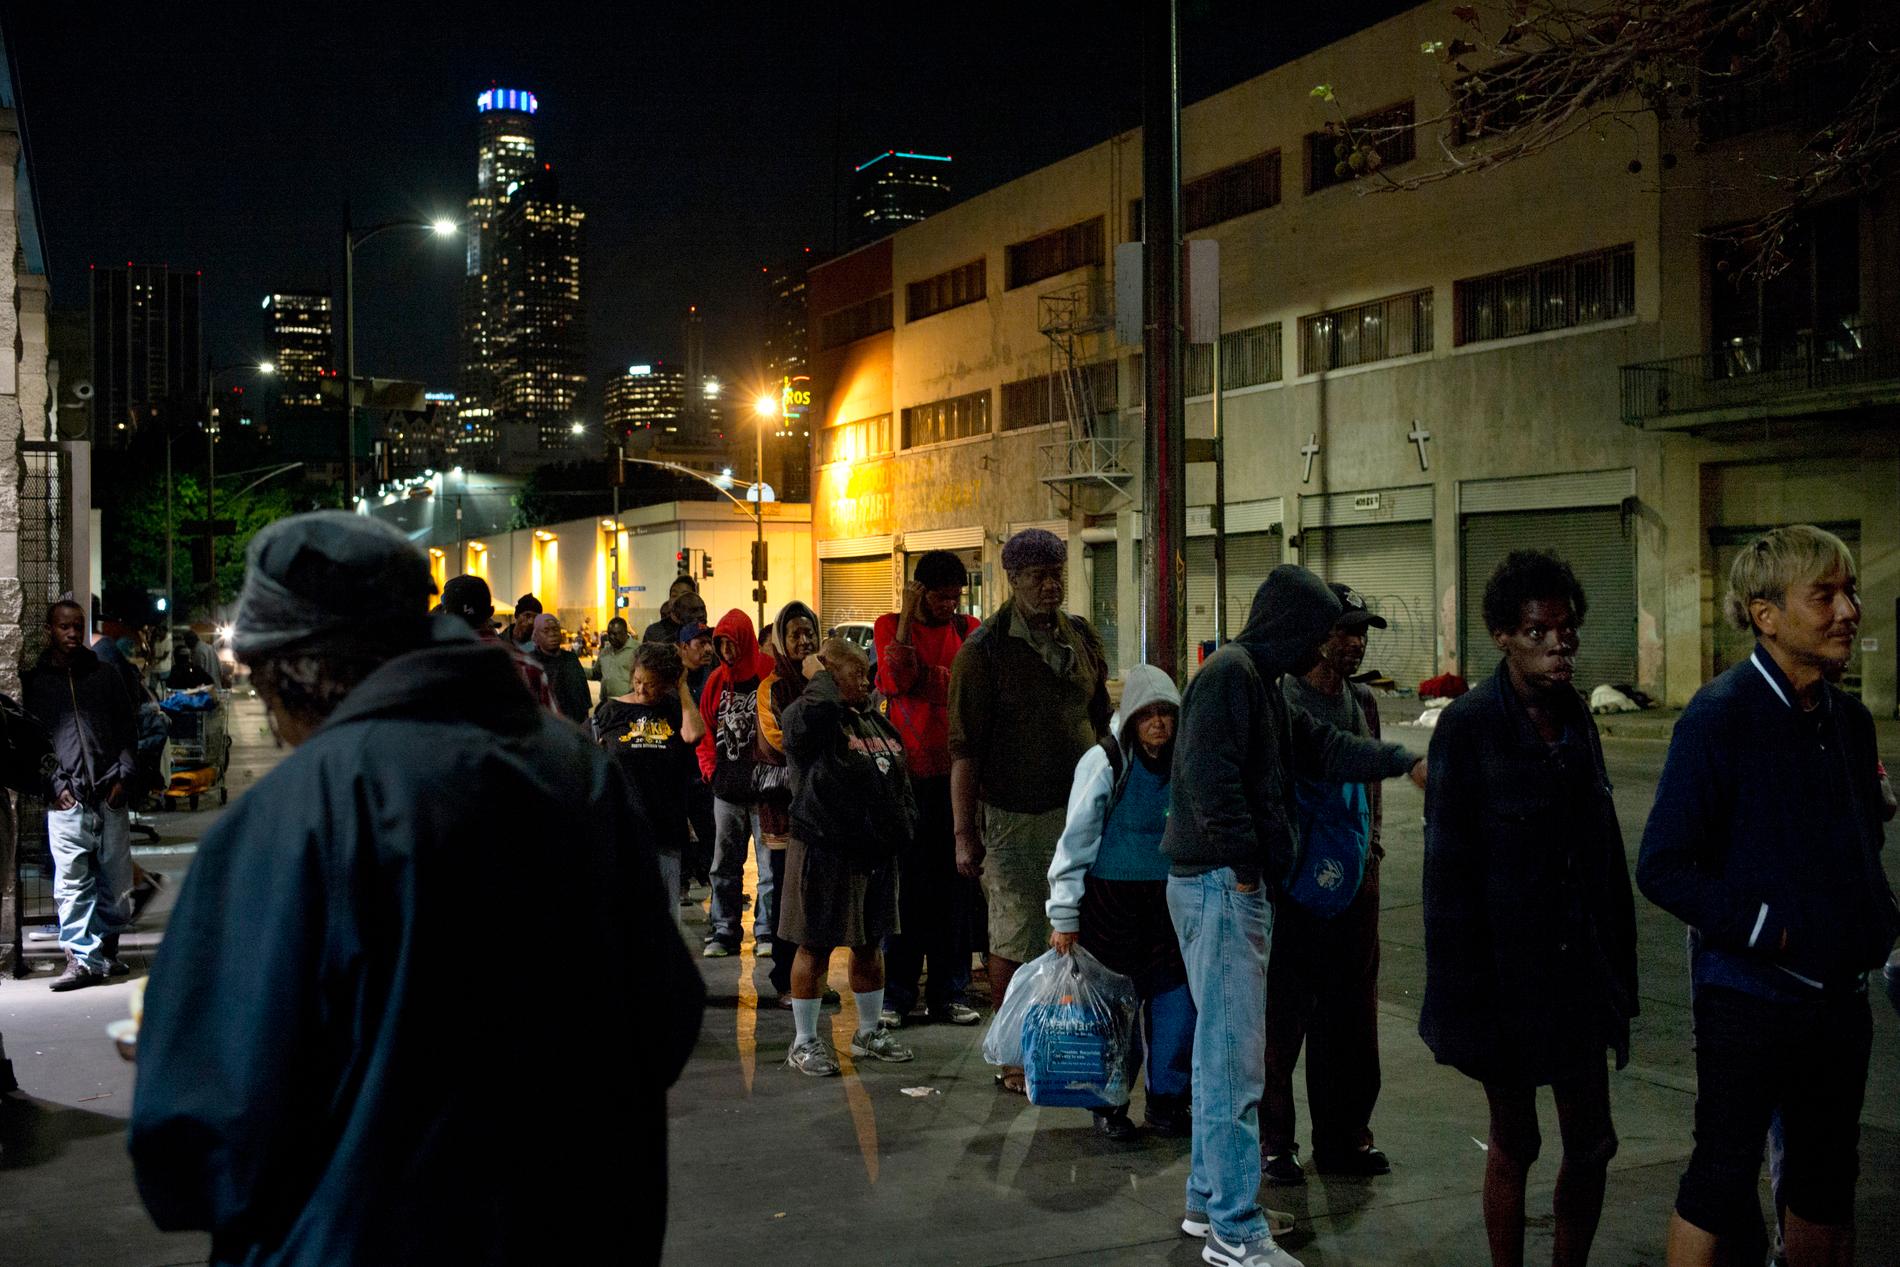 Kalifornien agerar mot en hemlöshetskris. Här köar hemlösa personer för att få mat i Los Angeles-området Skid Row, där ett stort antal hemlösa håller till. Arkivbild från september 2017.